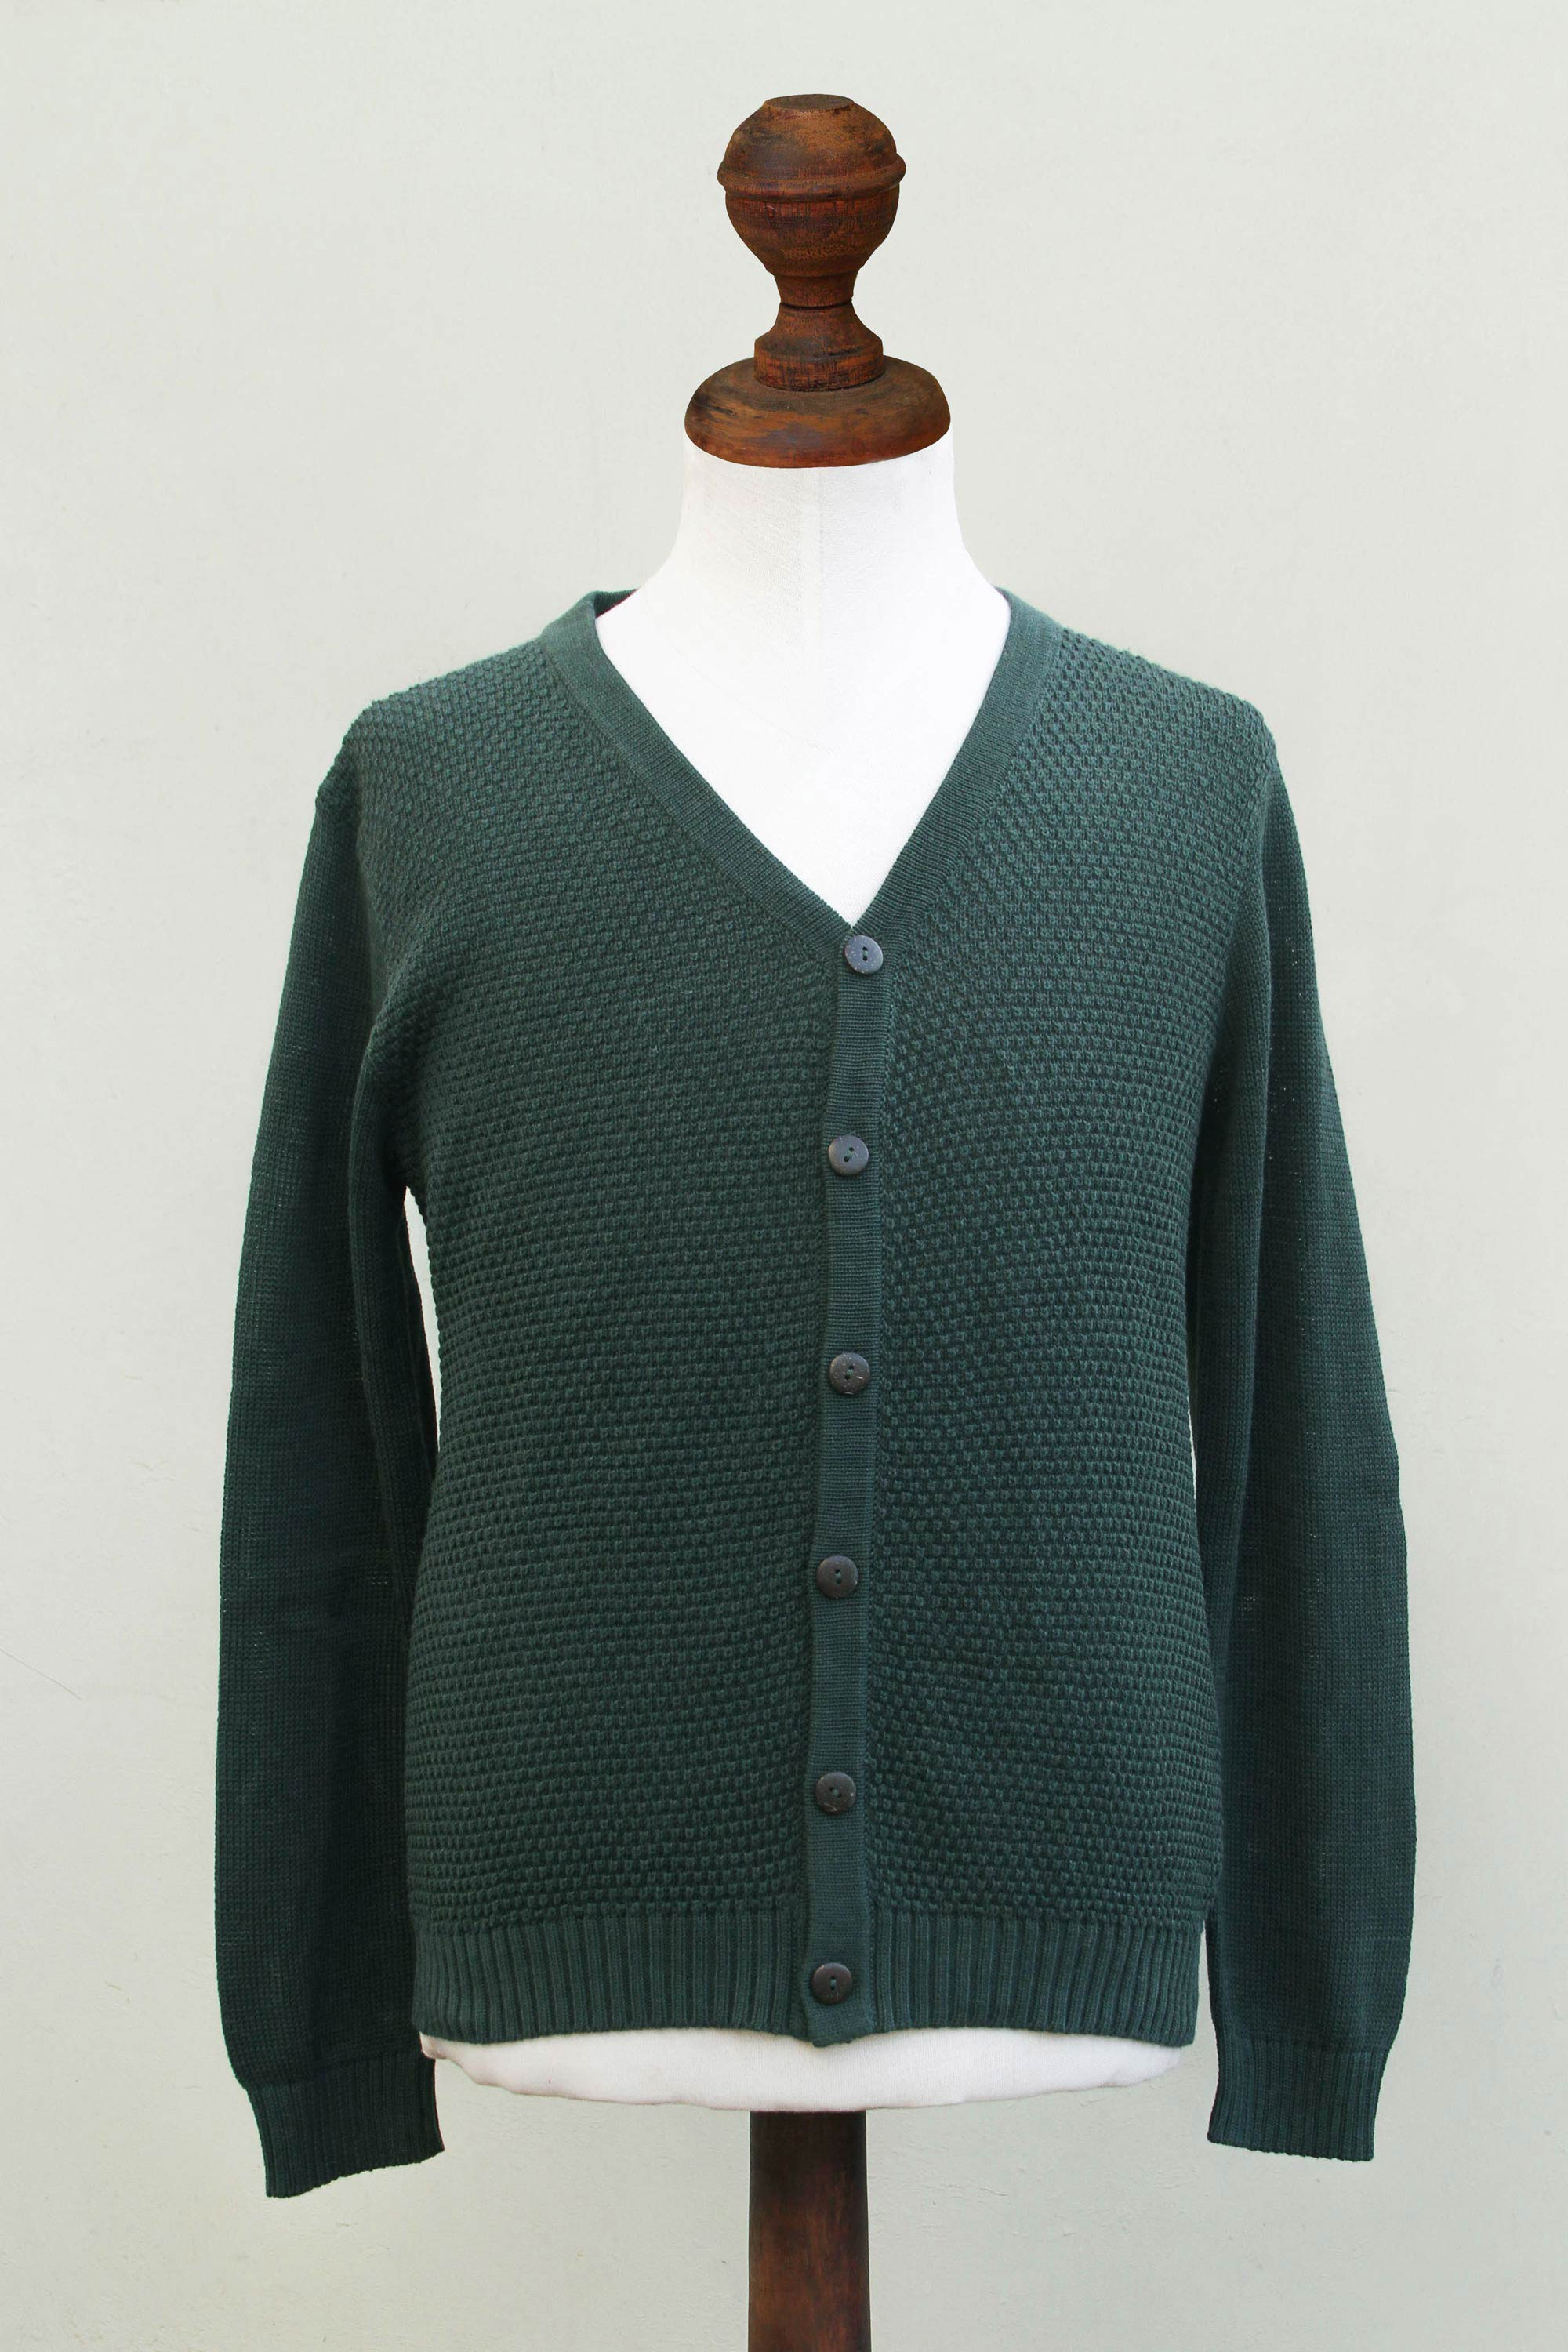 UNICEF Market | Andes Men's Green Cotton Cardigan Sweater - Villa Nueva